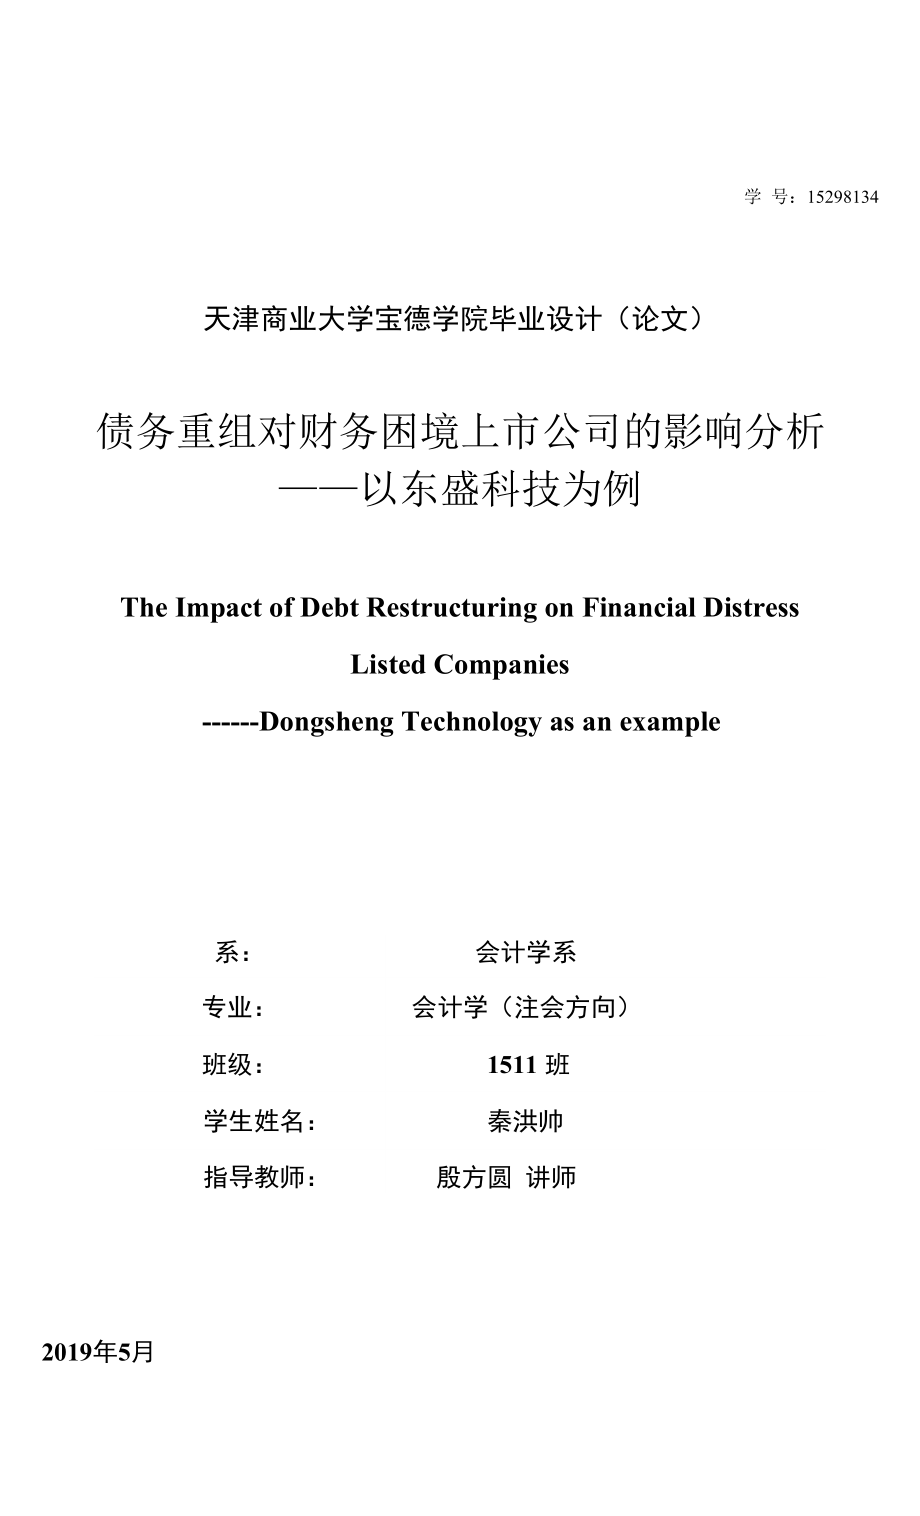 债务重组对财务困境上市公司的影响分析 ——以东盛科技为例_第1页